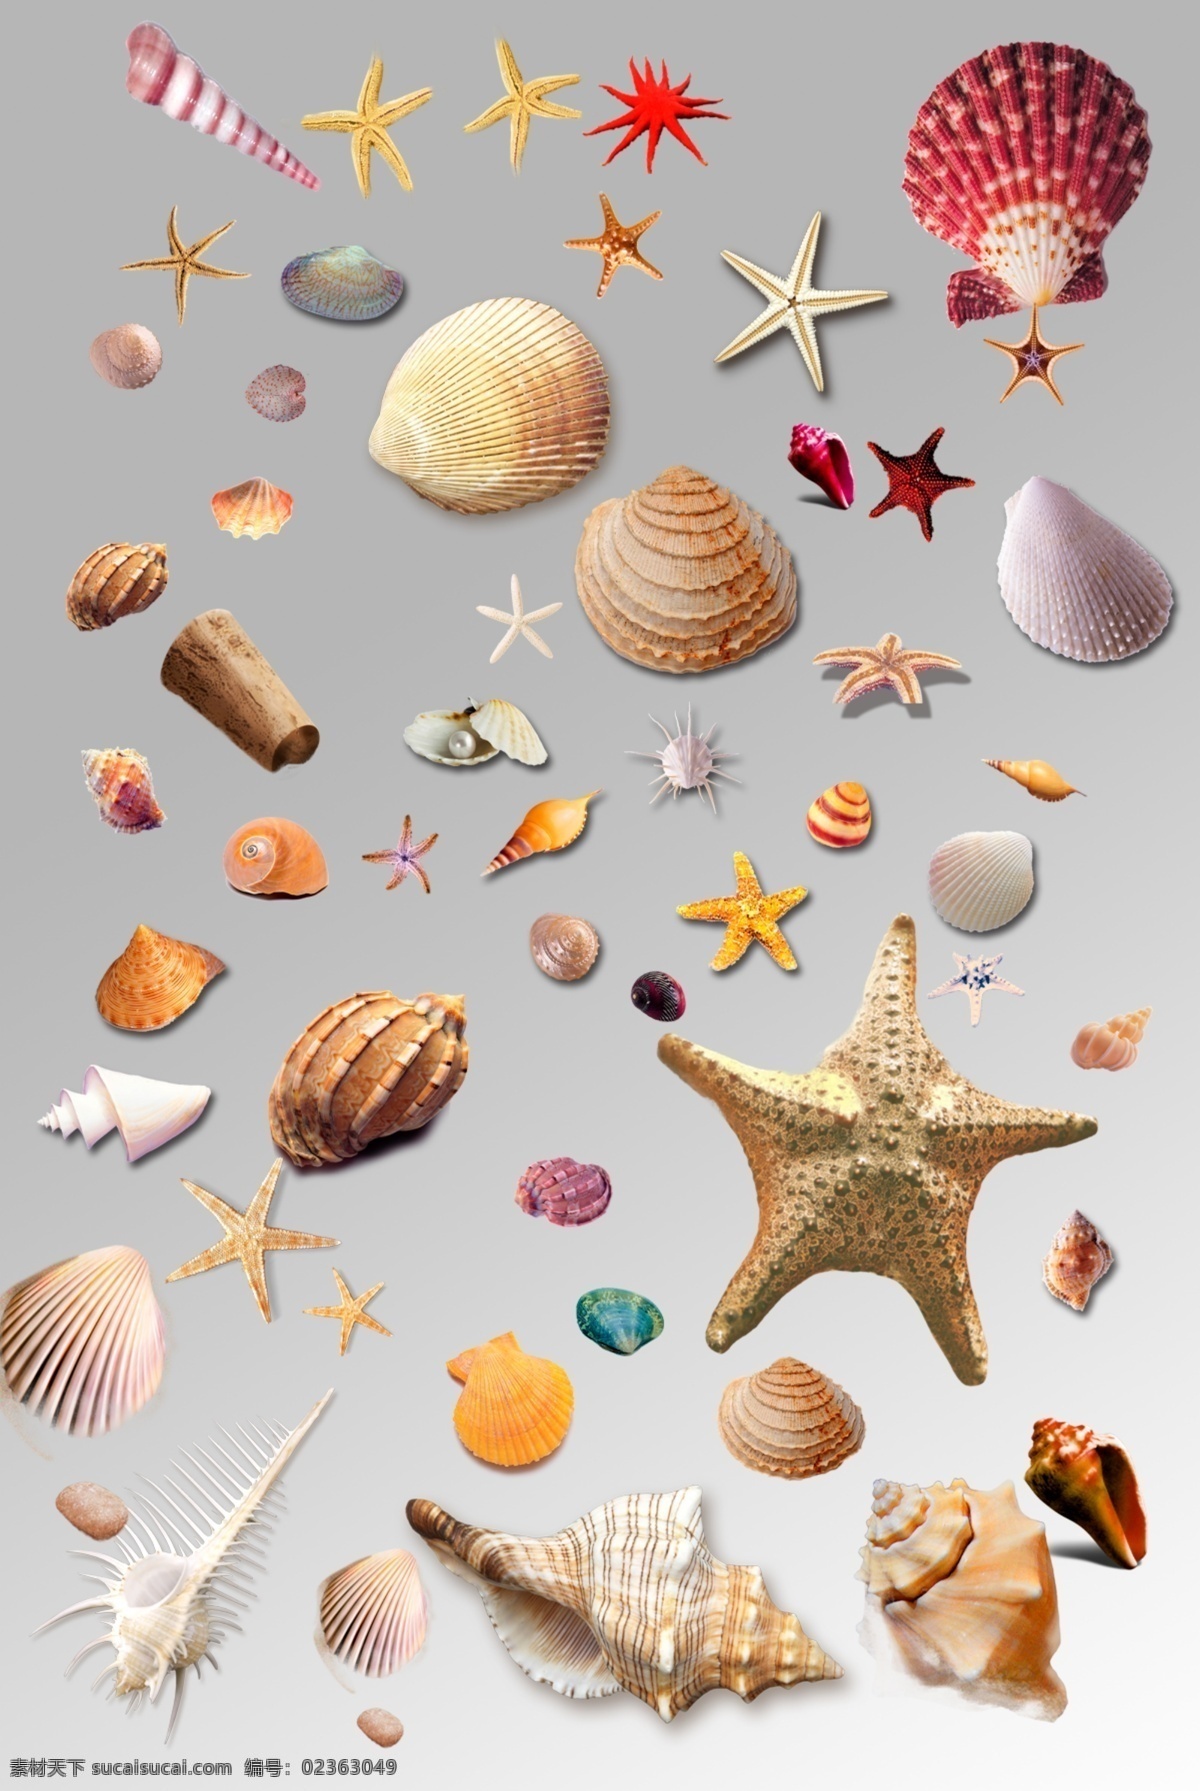 组 各种各样 贝壳 海星 海螺 海洋生物 元素 海洋生物集合 psd分层 卡通鱼类 海底世界 海底生物 海洋素材 贝壳素材